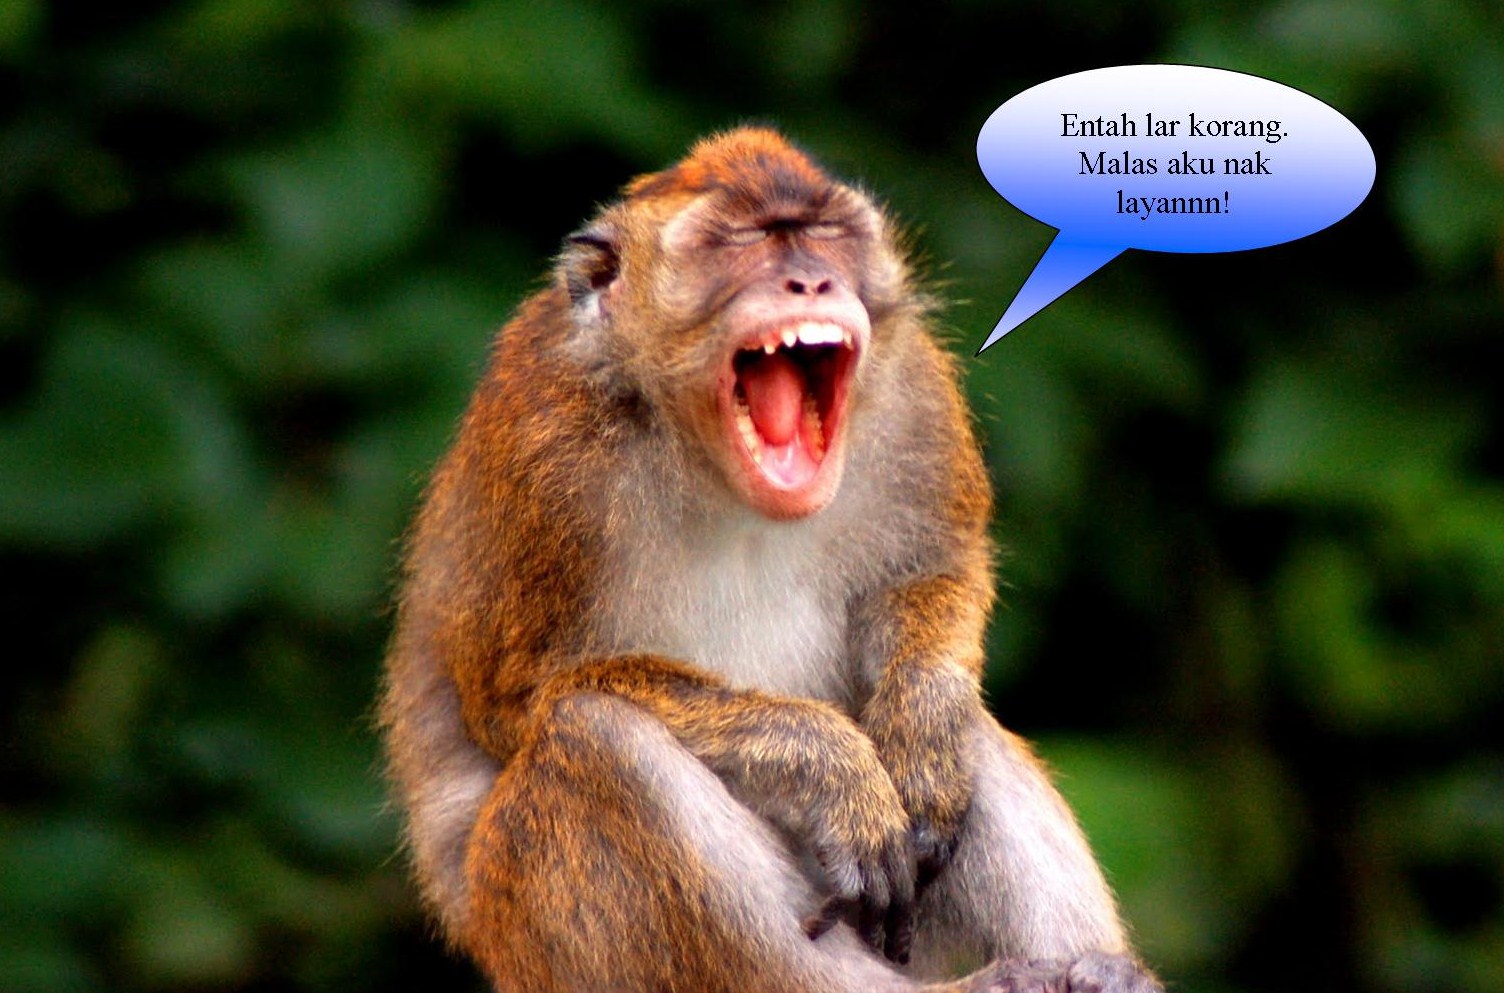 Download 100 Gambar Monyet Yg Lucu Keren Gratis